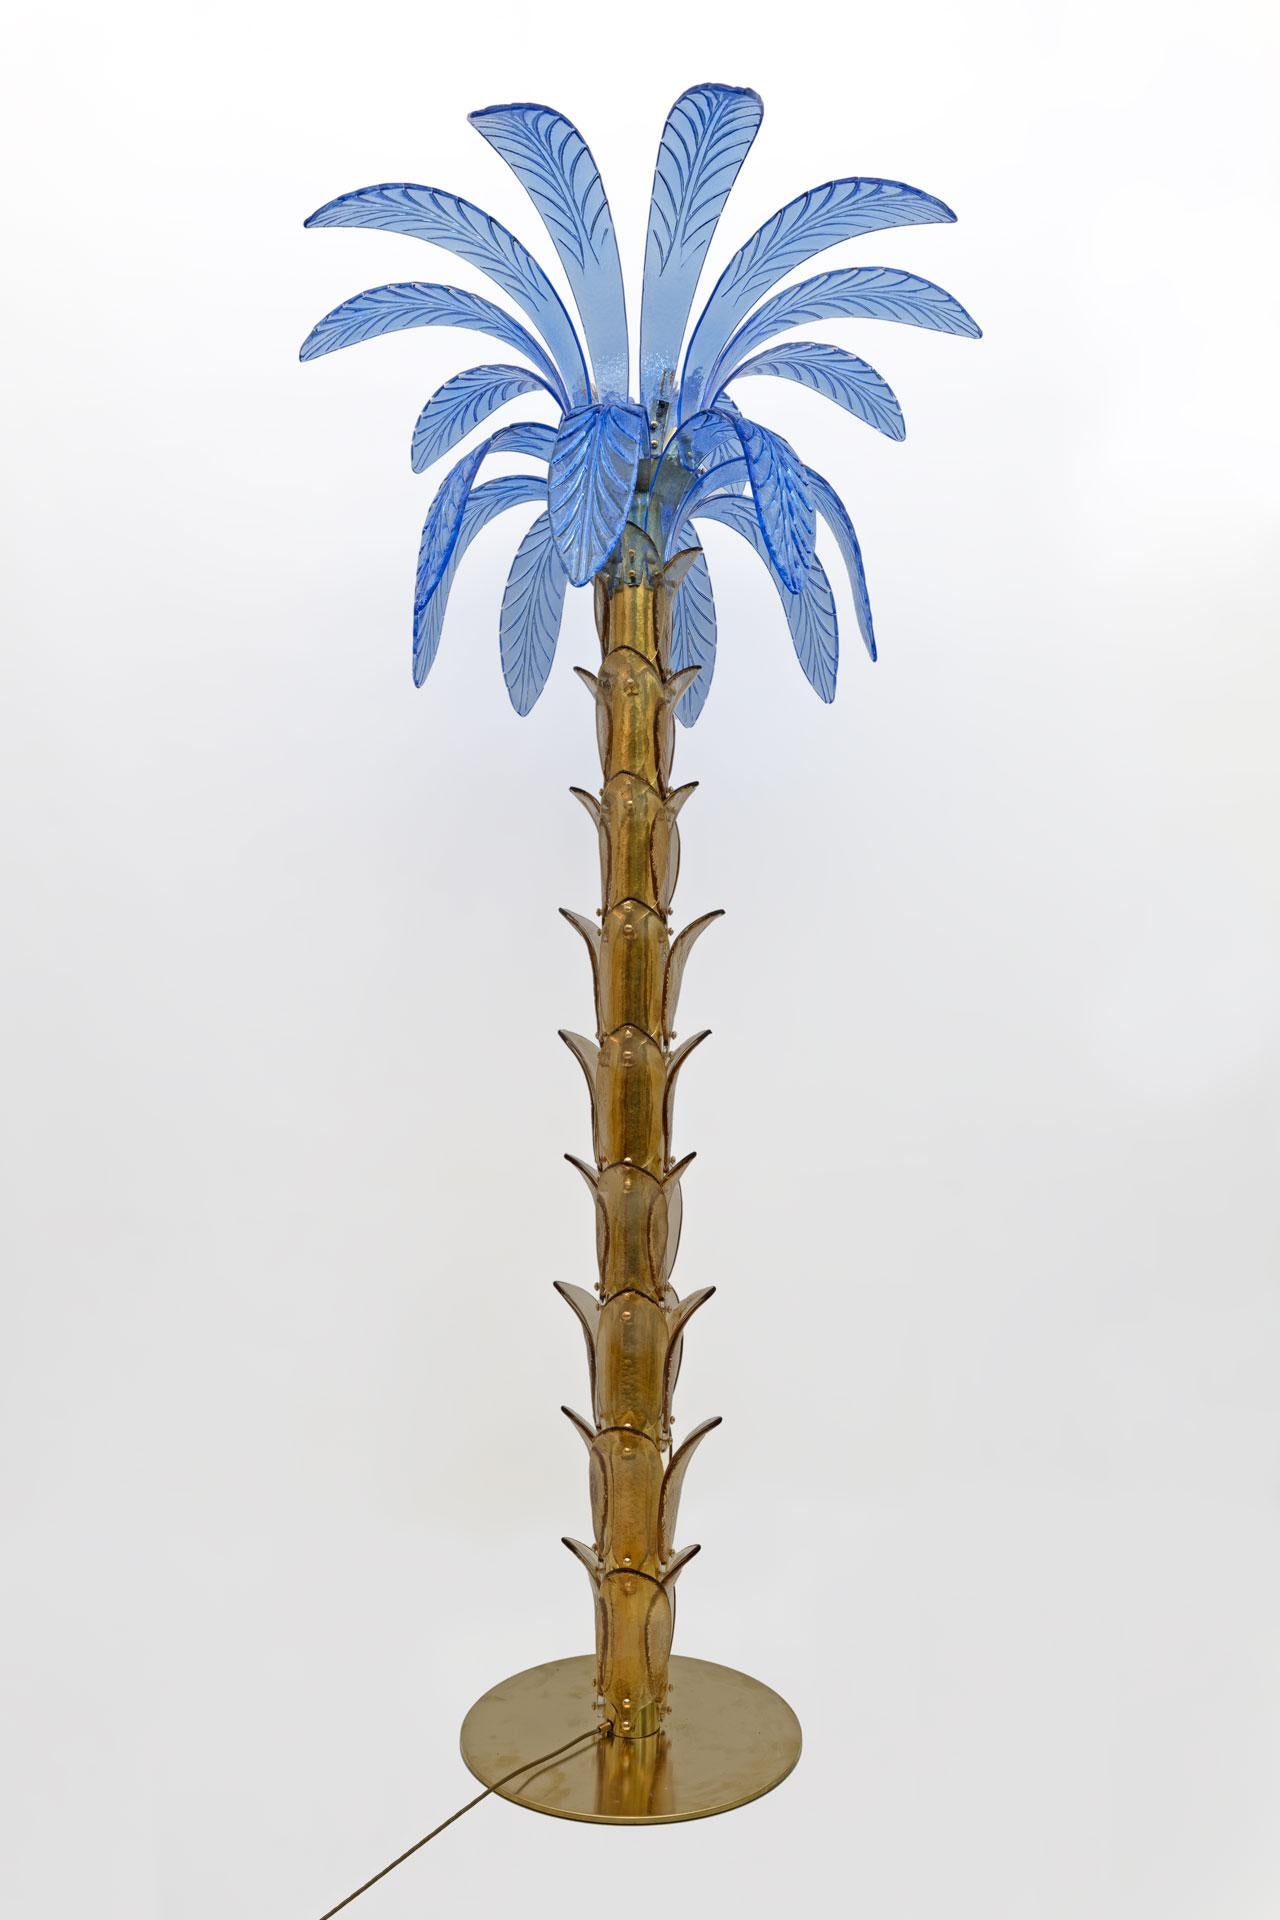 Lampadaire en verre soufflé de Murano ambre et bleu, la structure est en laiton, quatre ampoules. Le lampadaire est également une sculpture qui reproduit le tronc et les feuilles d'un palmier avec des morceaux de verre.